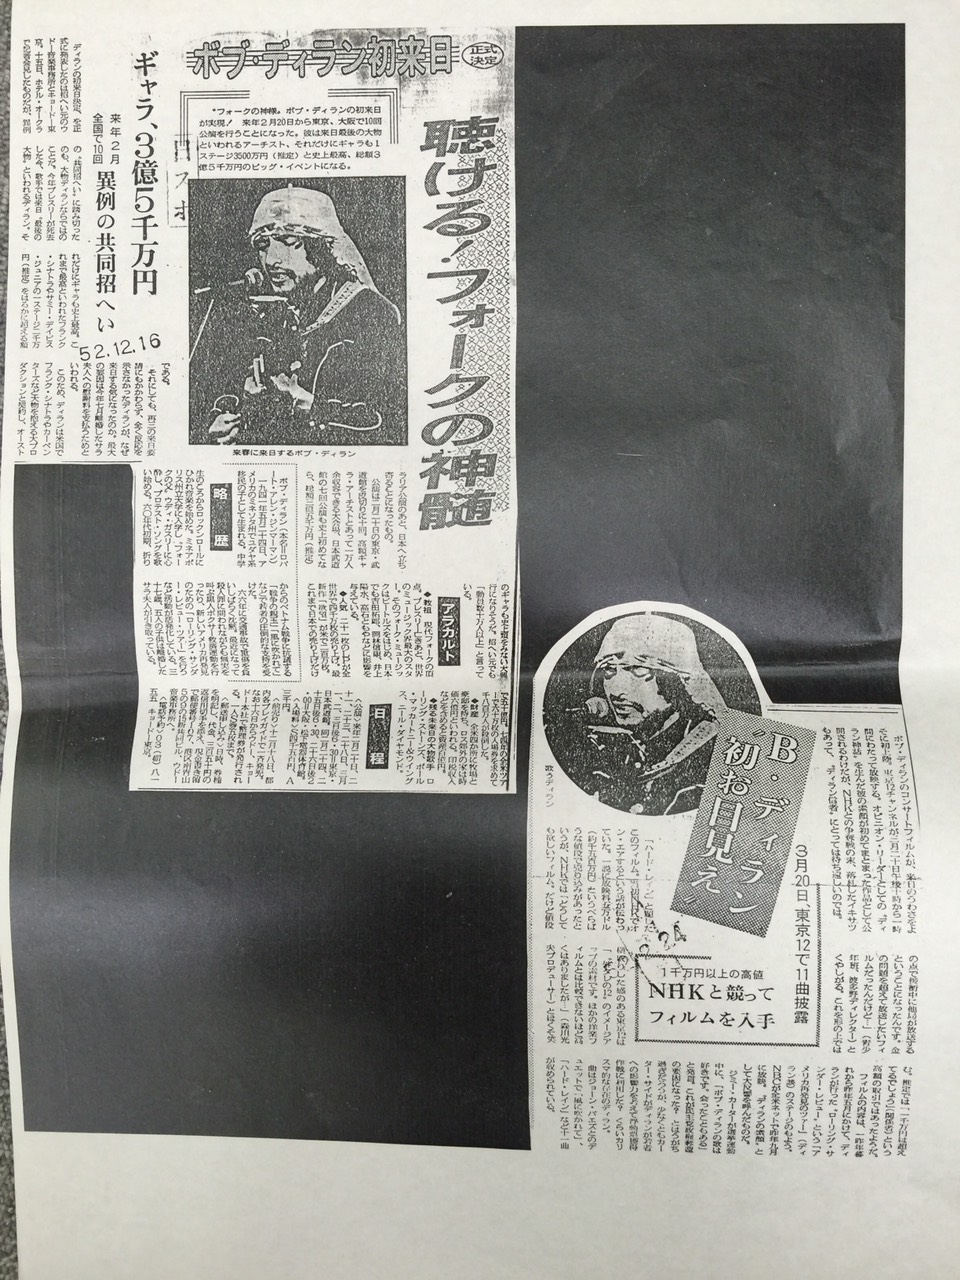 1978 NEWSPAPER 